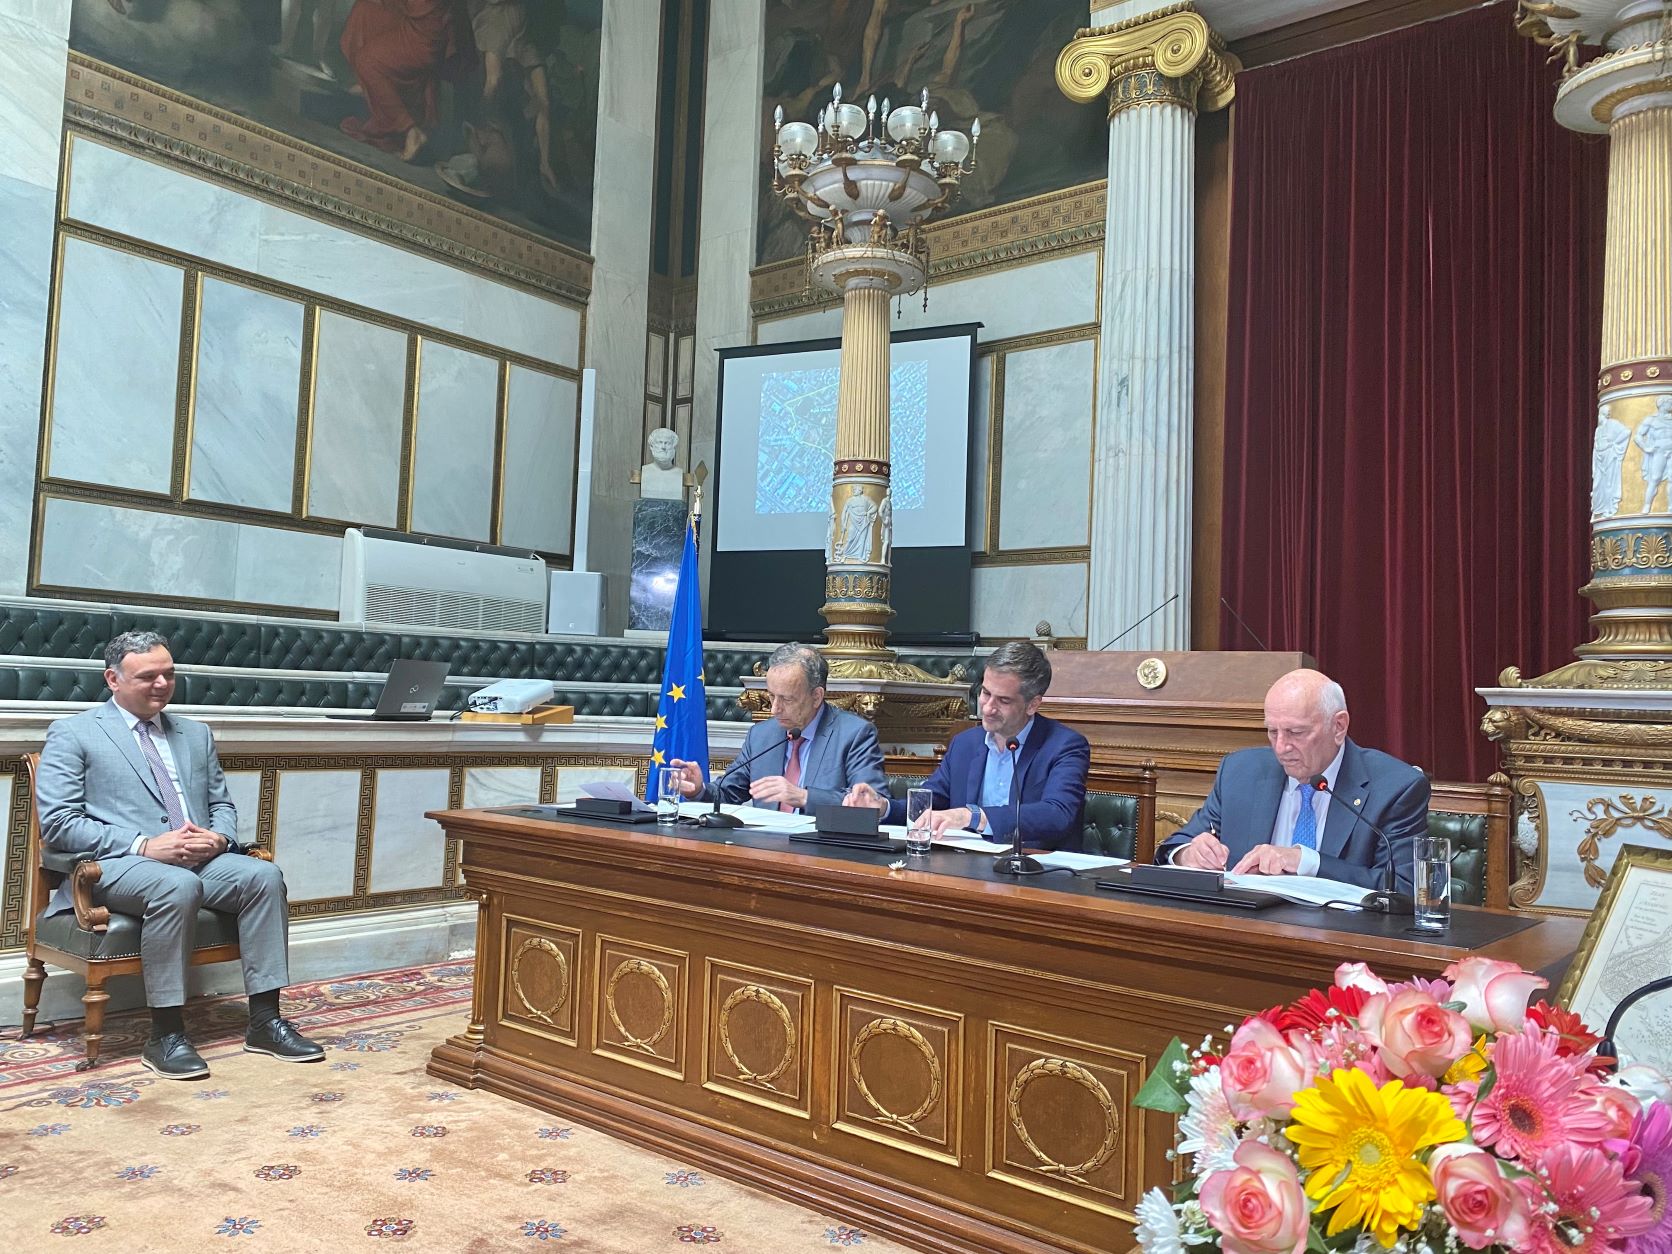 Υπογραφή μνημονίου συνεργασίας μεταξύ υπουργείου Πολιτισμού, Ακαδημίας Αθηνών και δήμου Αθηναίων